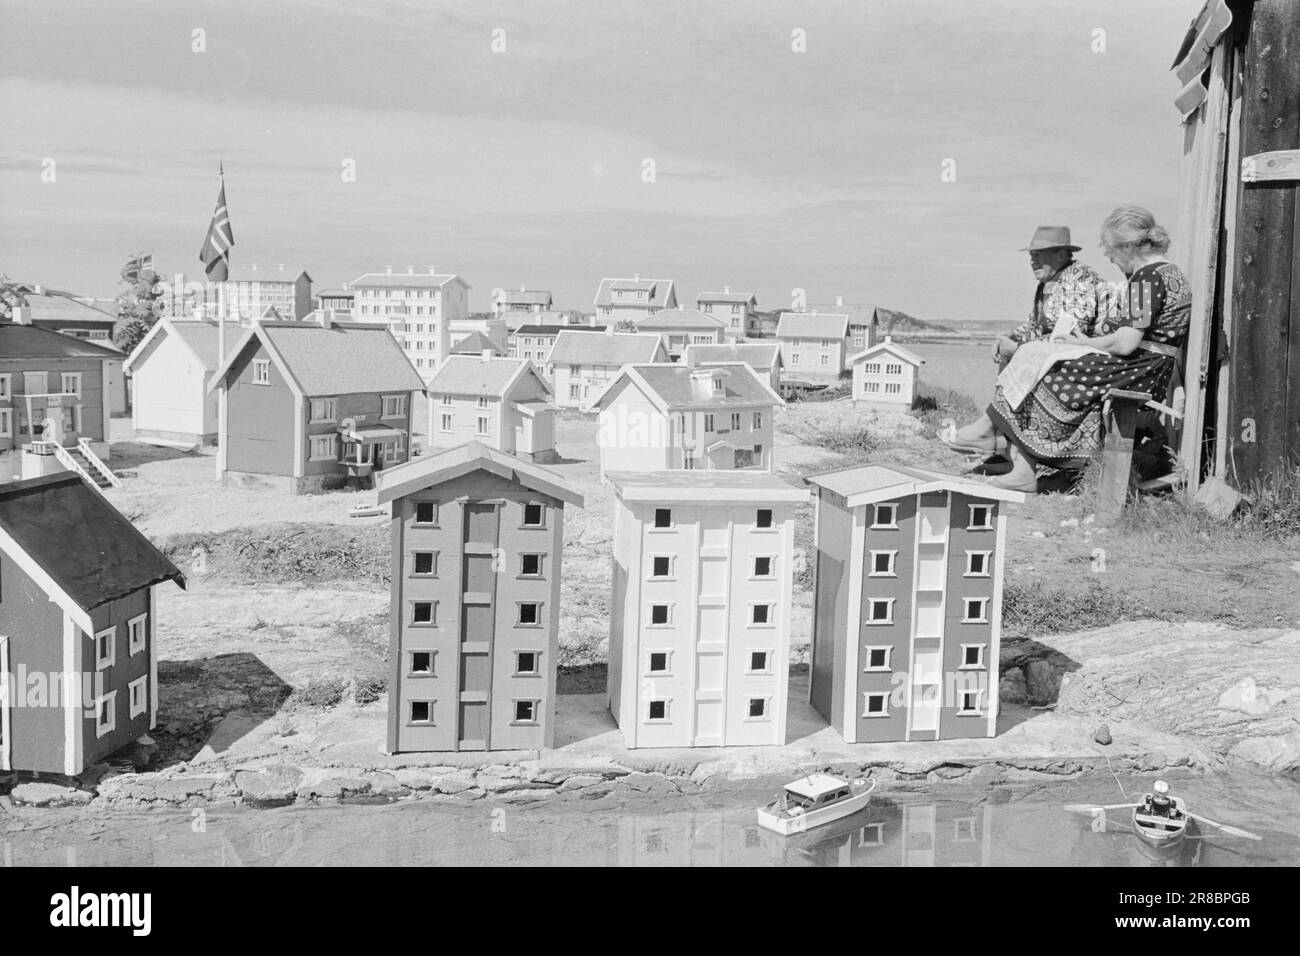 Courant 29-1-1960: Lilleputtbyen. Le pêcheur Johan Hopsø sur Dolmøy s'est construit une petite ville florissante en format de poche.photo: Sverre A. Børretzen / courant / NTB ***photo non traitée*** Banque D'Images